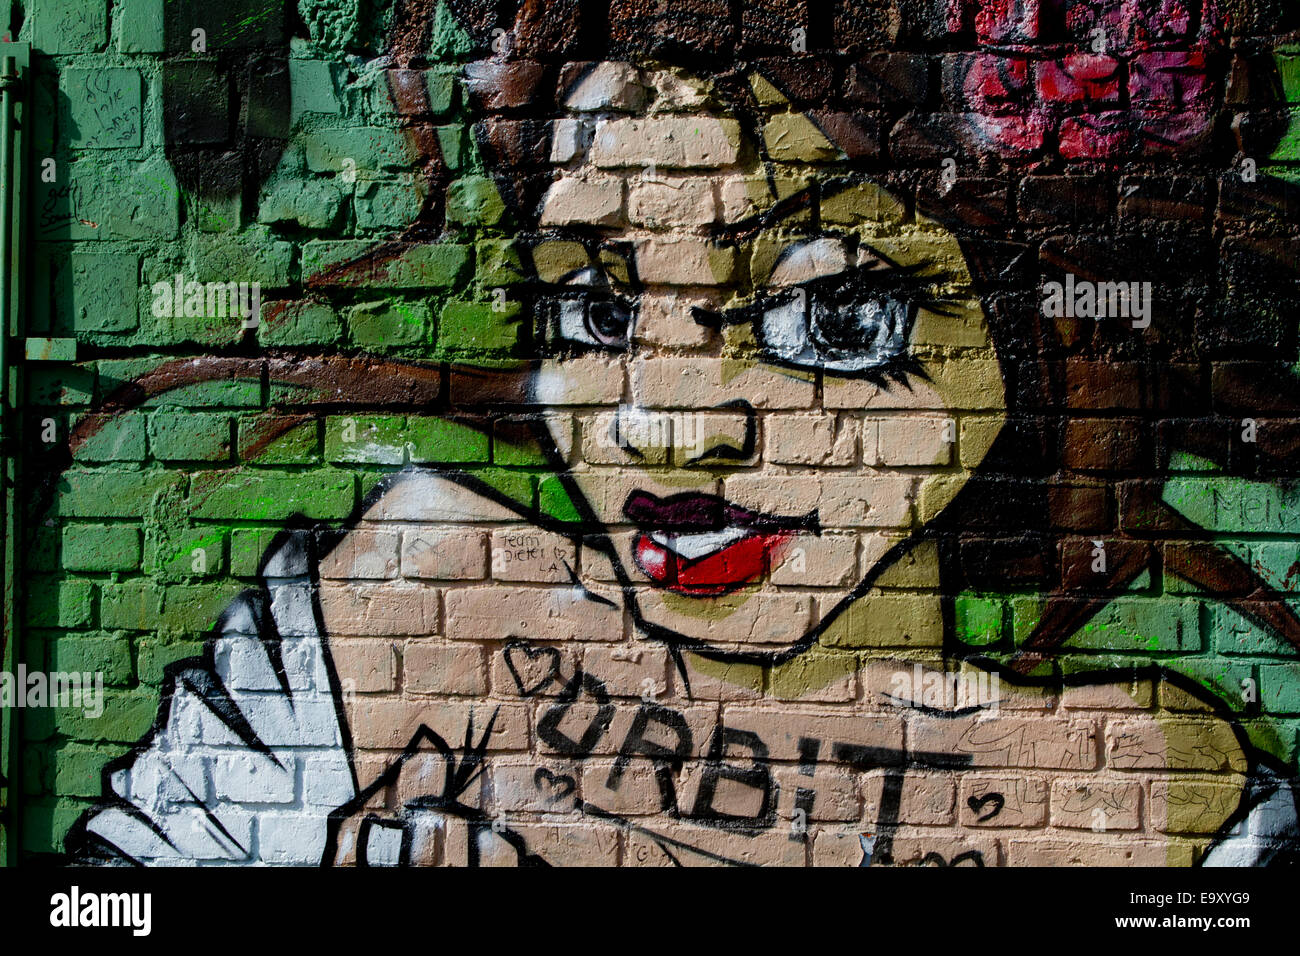 graffiti Berlin wall bricks womans face orbit Stock Photo